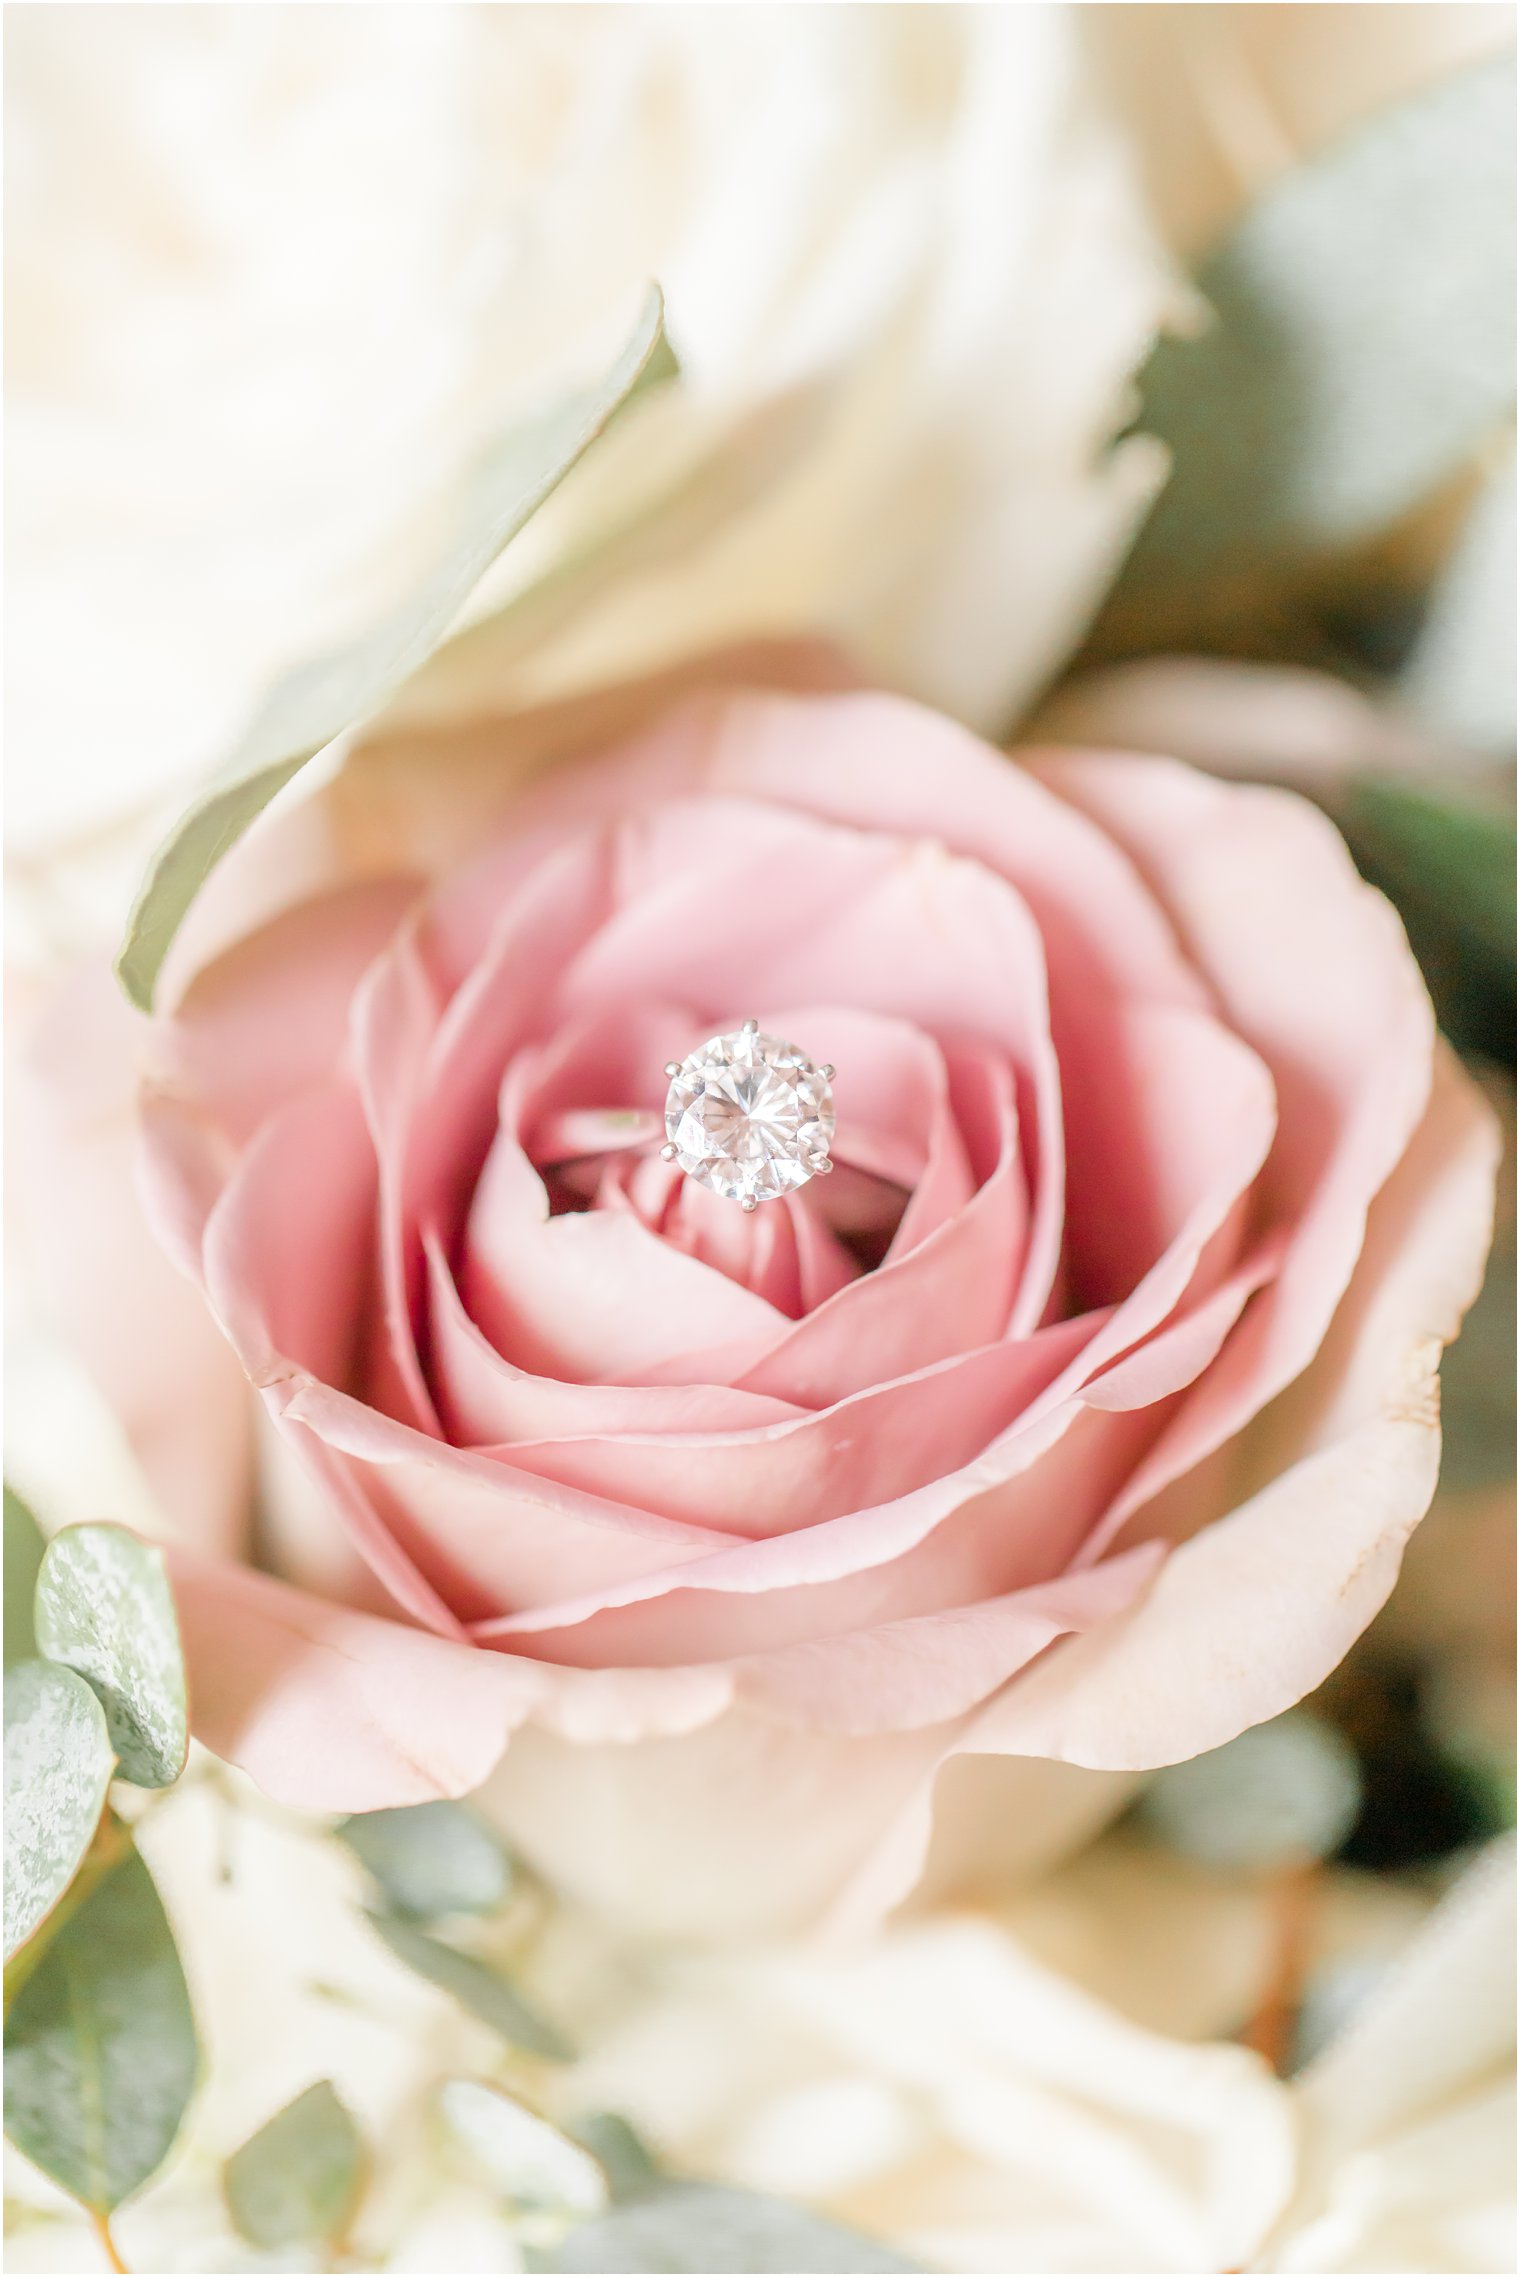 wedding ring sits on pink rose during NJ wedding prep